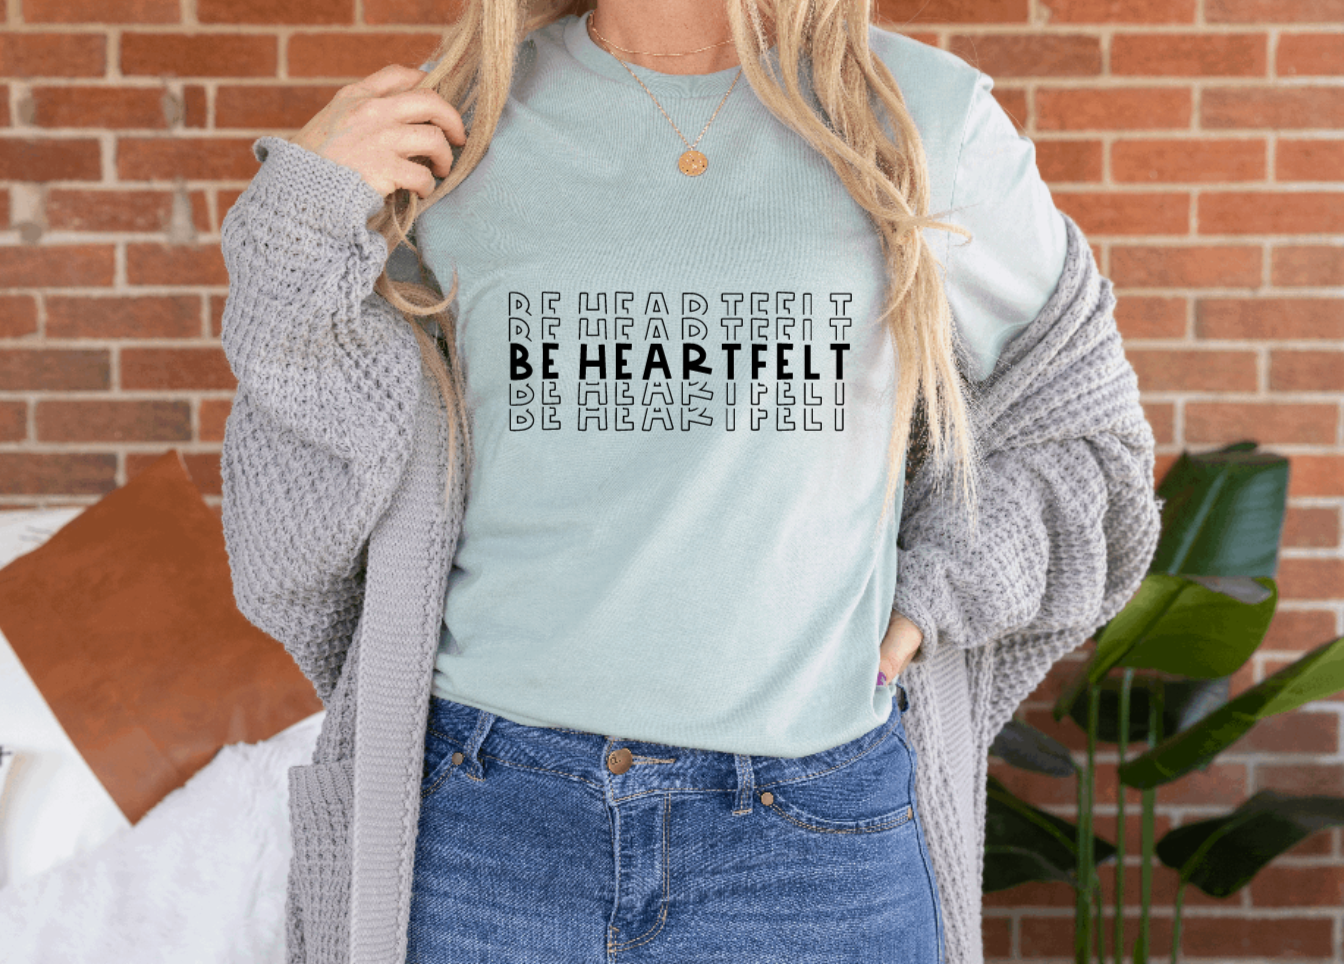 Be Heartfelt Shirt